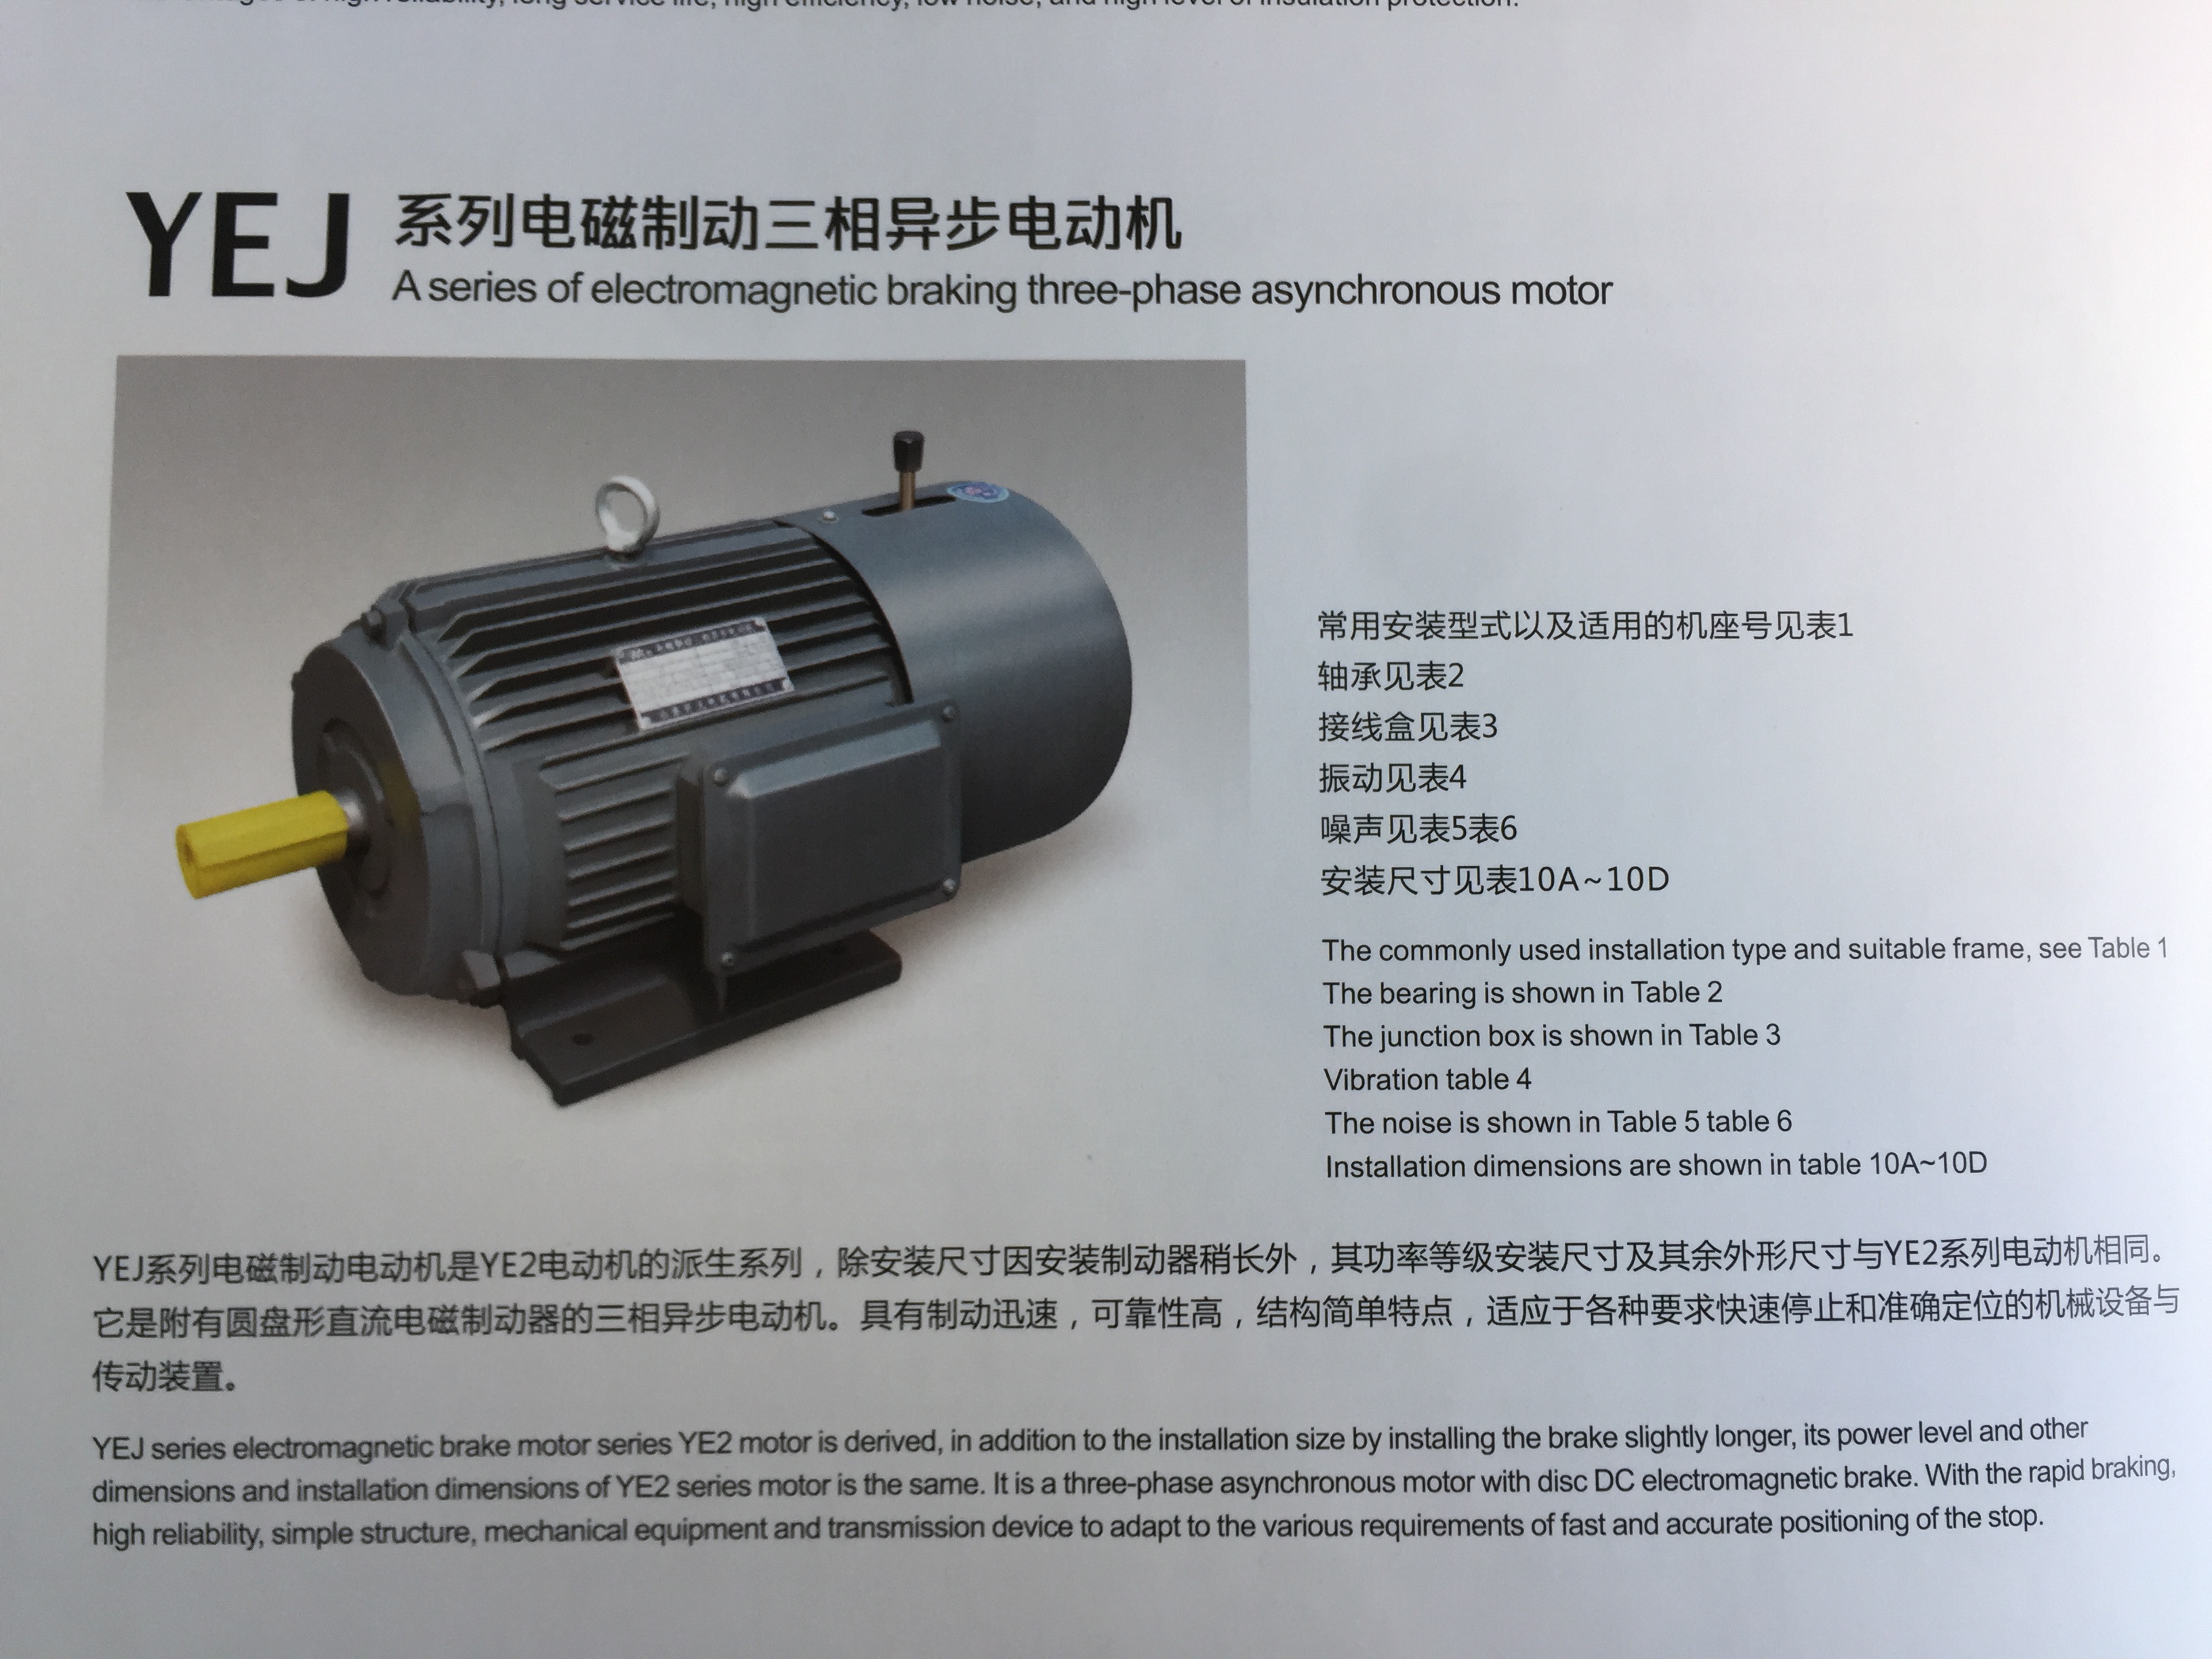 潍坊市YE2高效率三相异步电动机厂家YE2高效率三相异步电动机